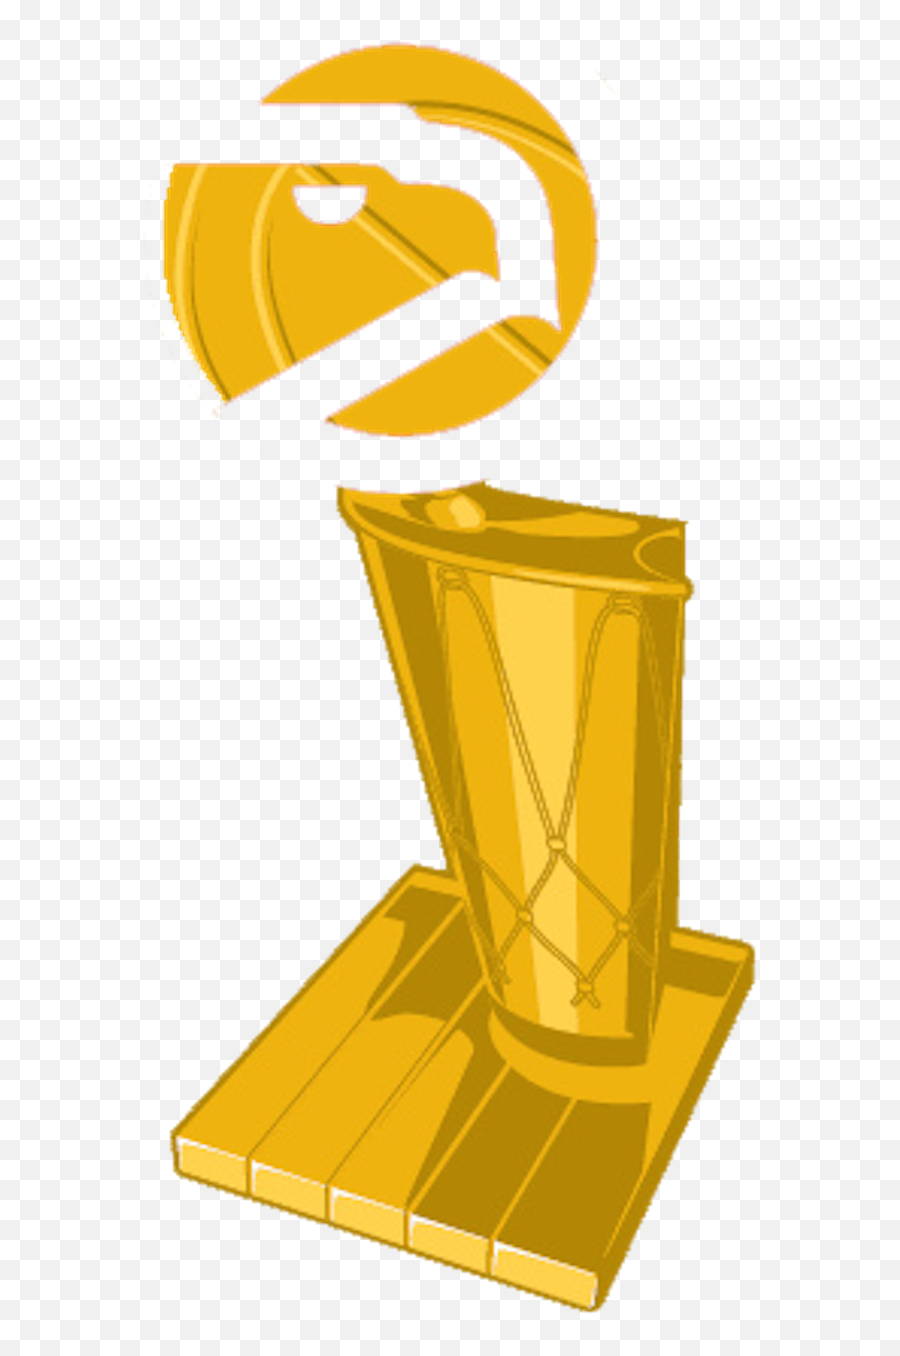 Nfl Championship Trophy Transparent - Nba Finals 2011 Emoji,Nba Finals Emoji